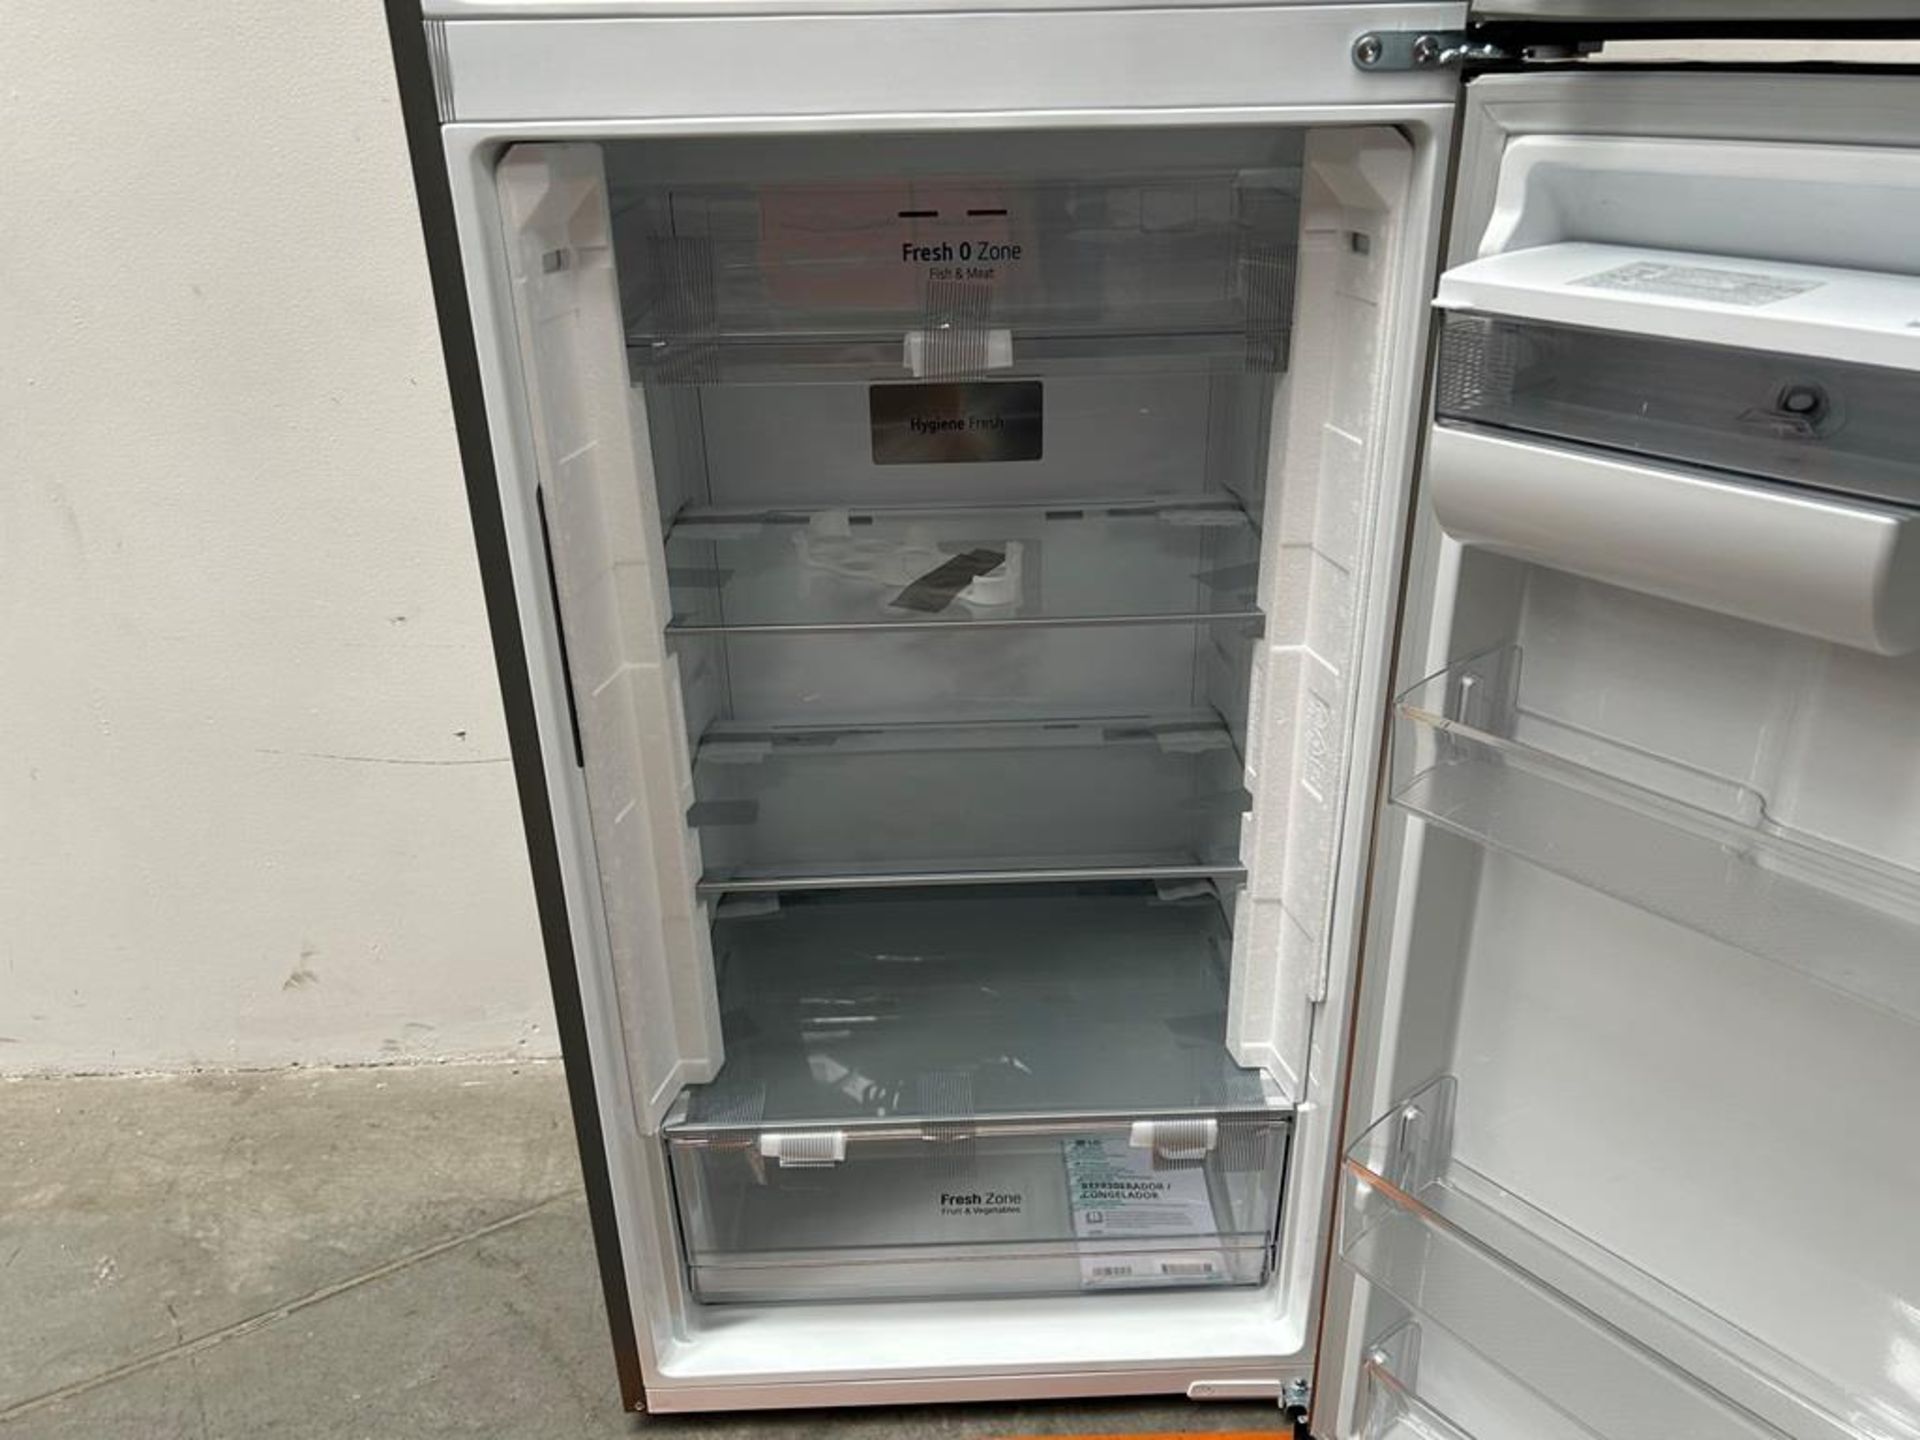 (NUEVO) Refrigerador con dispensador de agua Marca LG, Modelo VT40AWP, Serie 48304, Color GRIS - Image 6 of 11